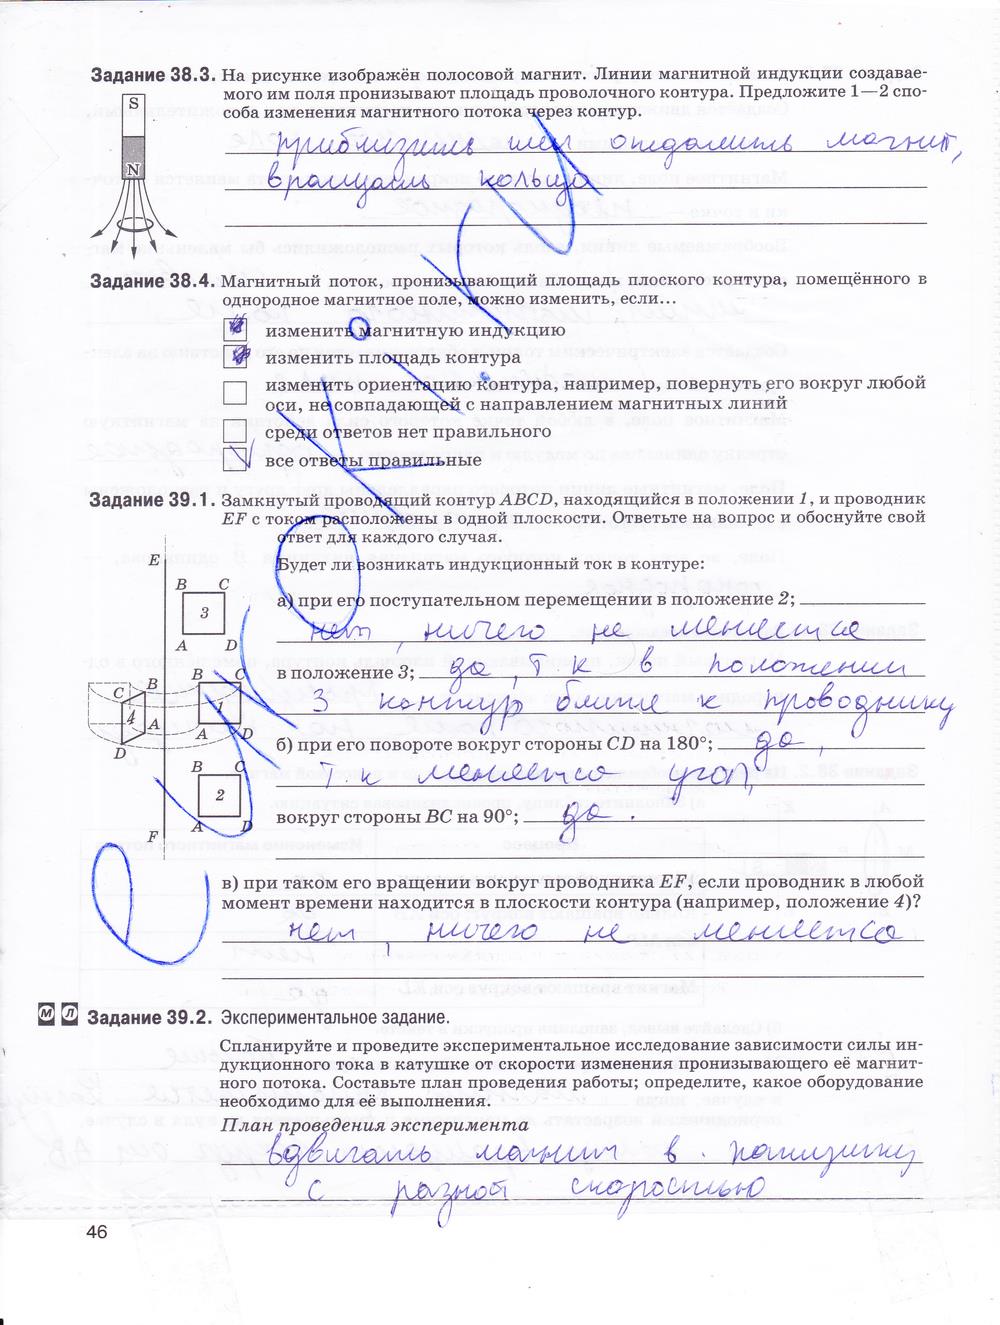 гдз 9 класс рабочая тетрадь страница 46 физика Гутник, Власова